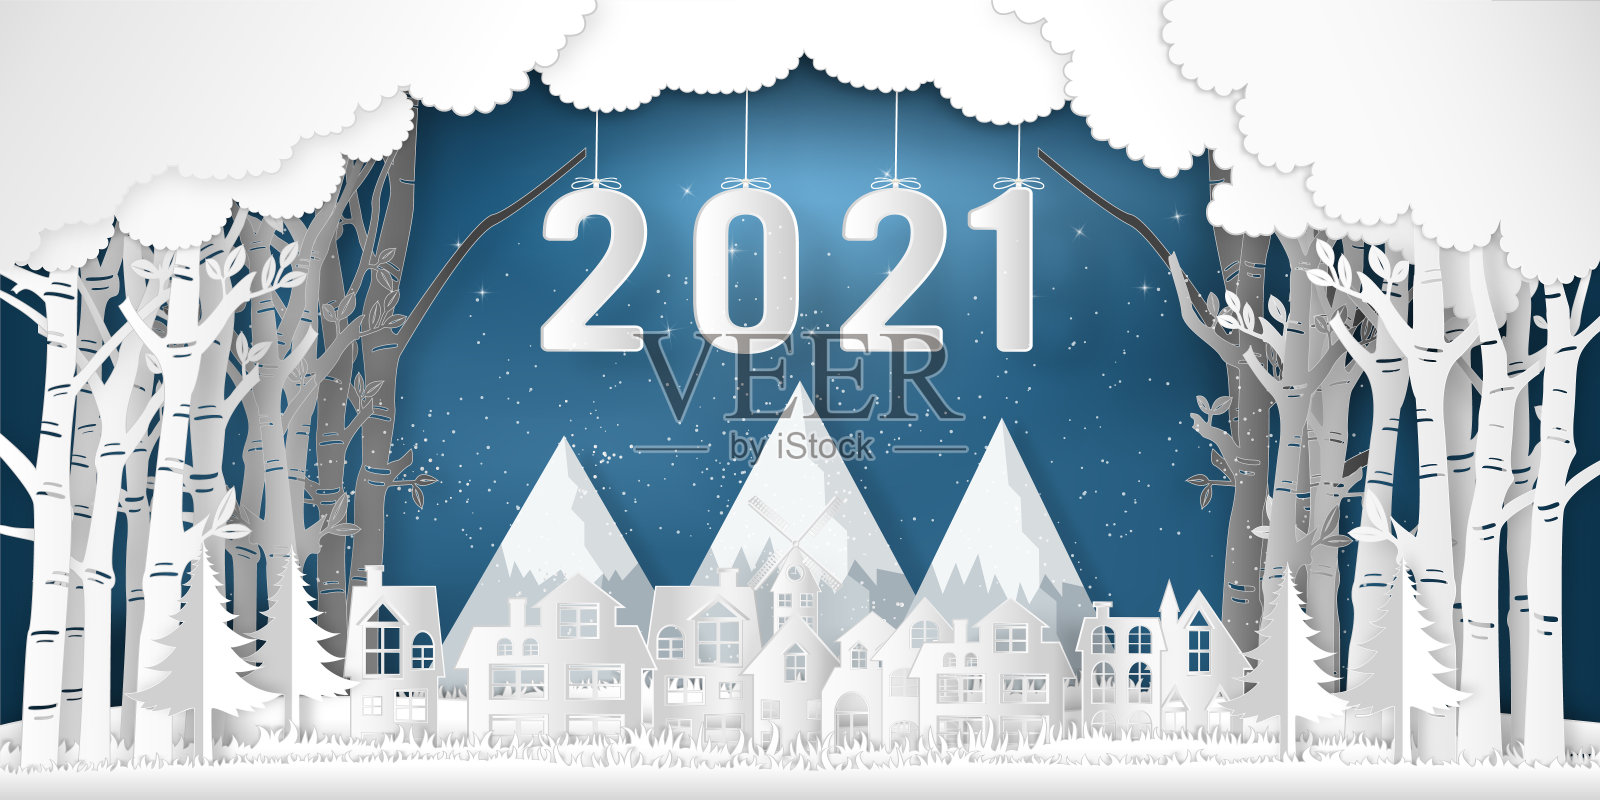 2021年的纸艺术和剪纸在冬季与树木，森林和雪村在蓝天上的2021年快乐的新年和数字工艺风格的概念。矢量图插画图片素材